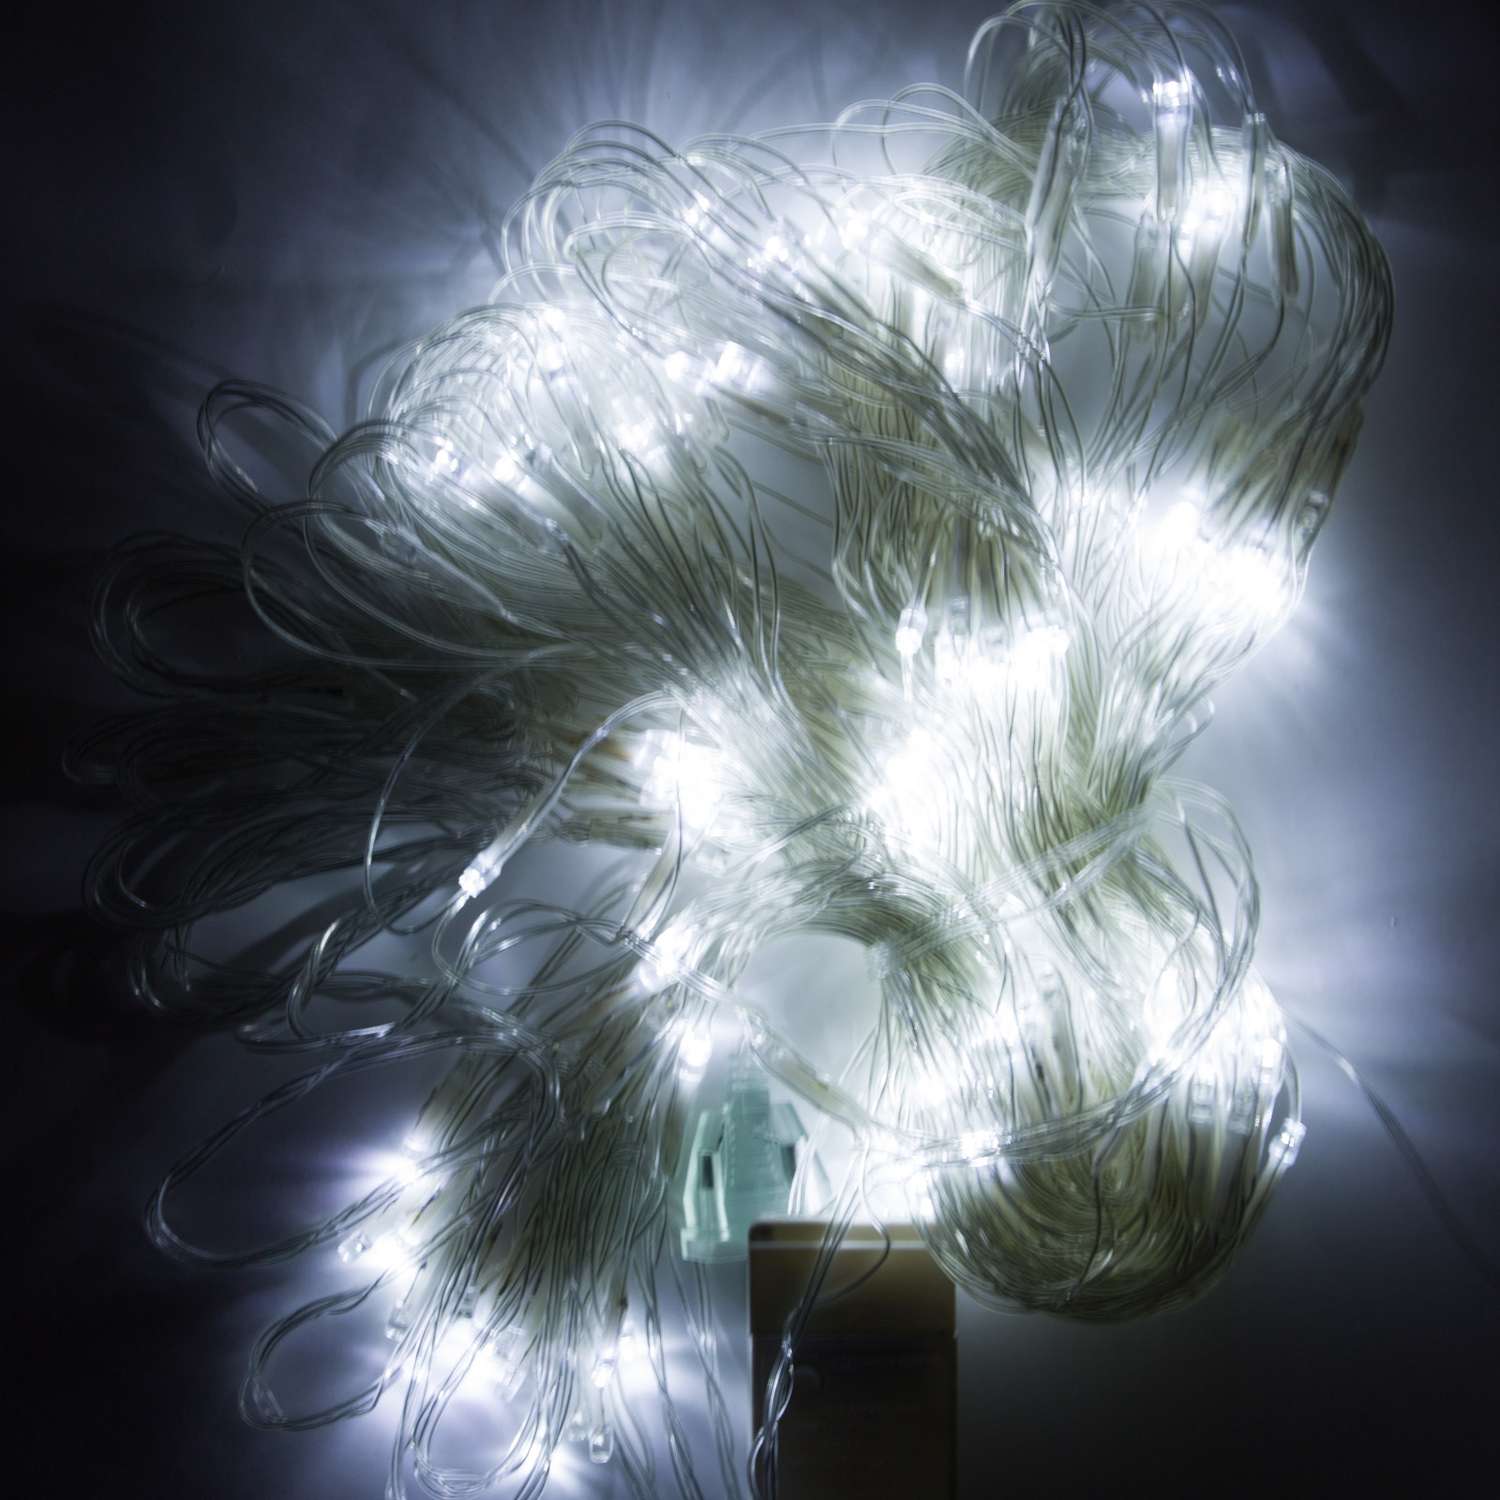 Гирлянда сетка 3м х 2м SXMas с LED лампами 192шт цвет белый холодный Питания 220В - фото 2